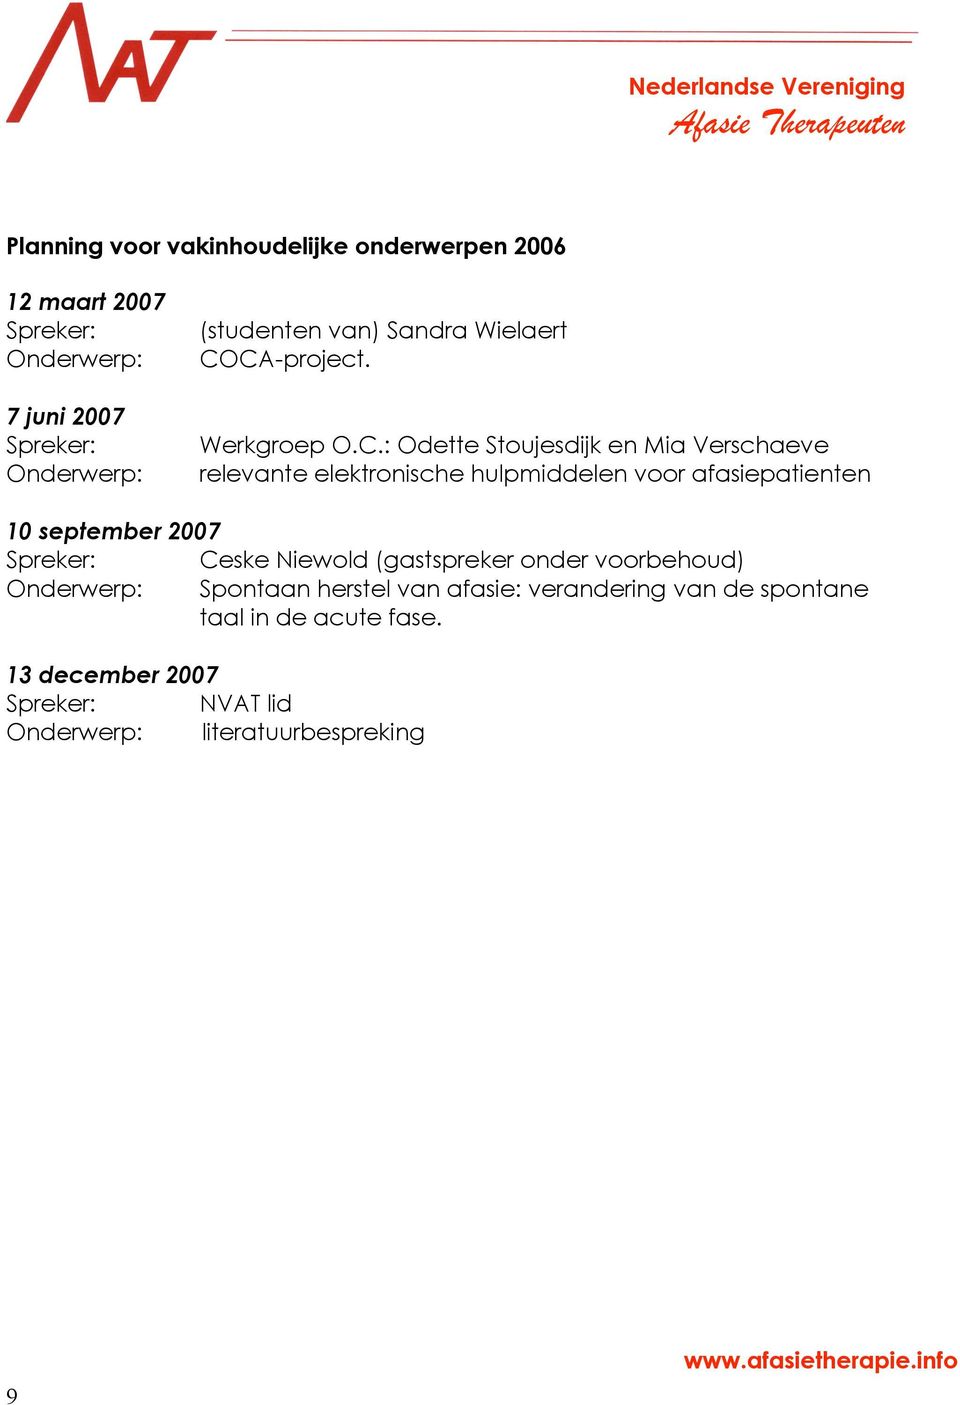 CA-project. Werkgroep O.C.: Odette Stoujesdijk en Mia Verschaeve relevante elektronische hulpmiddelen voor afasiepatienten 10